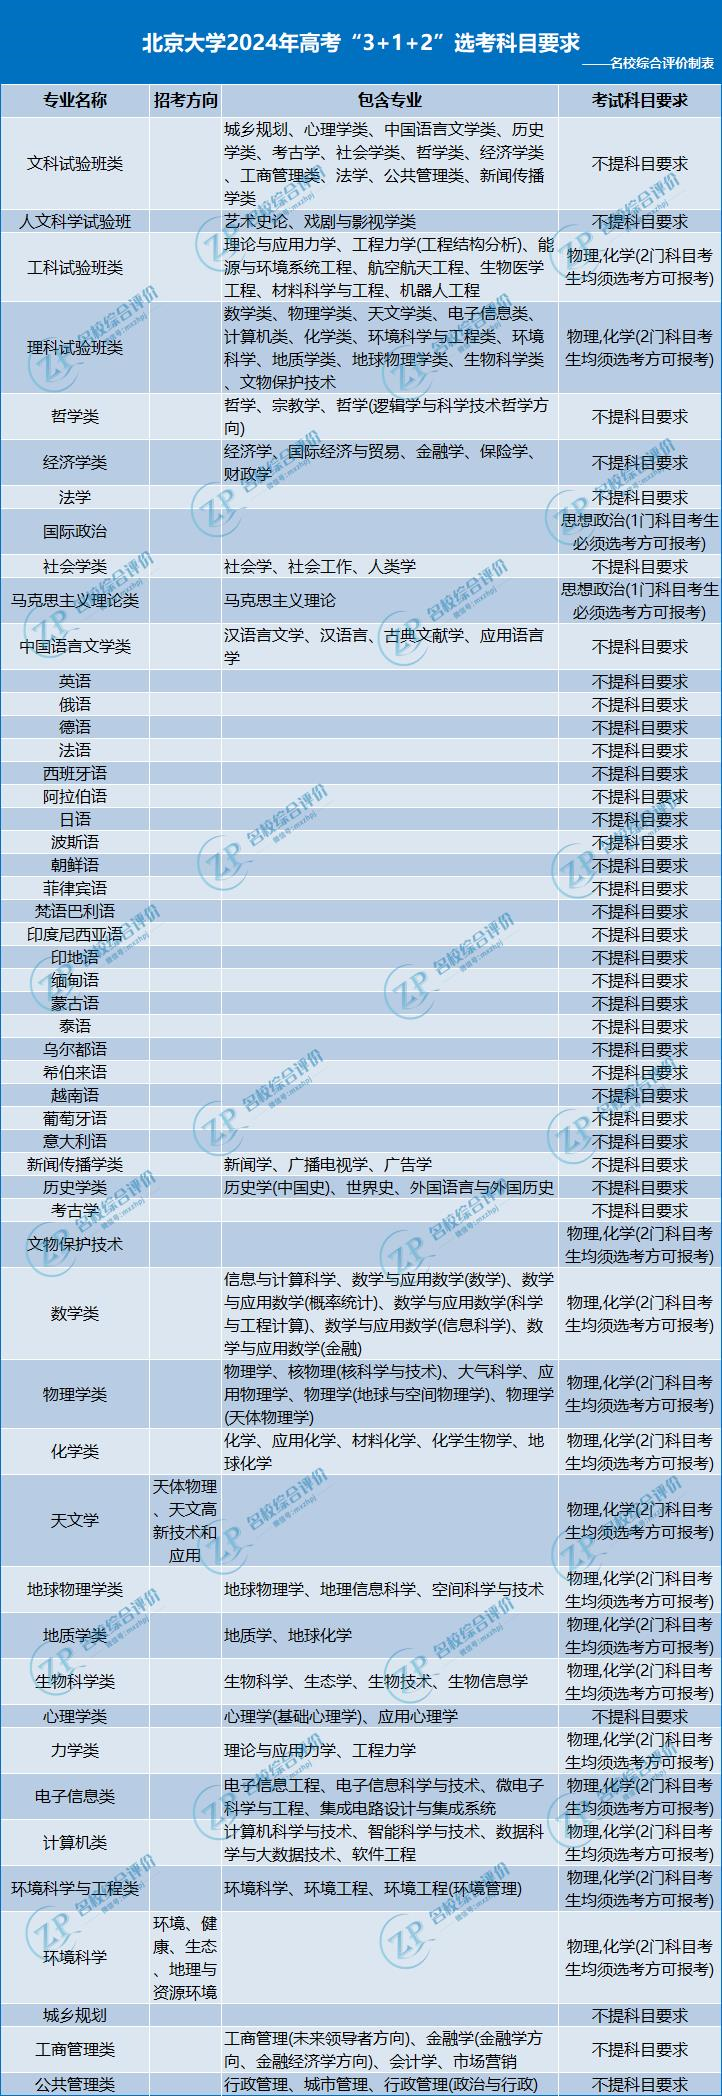 北京大学2024年高考"3+1+2"选科要求